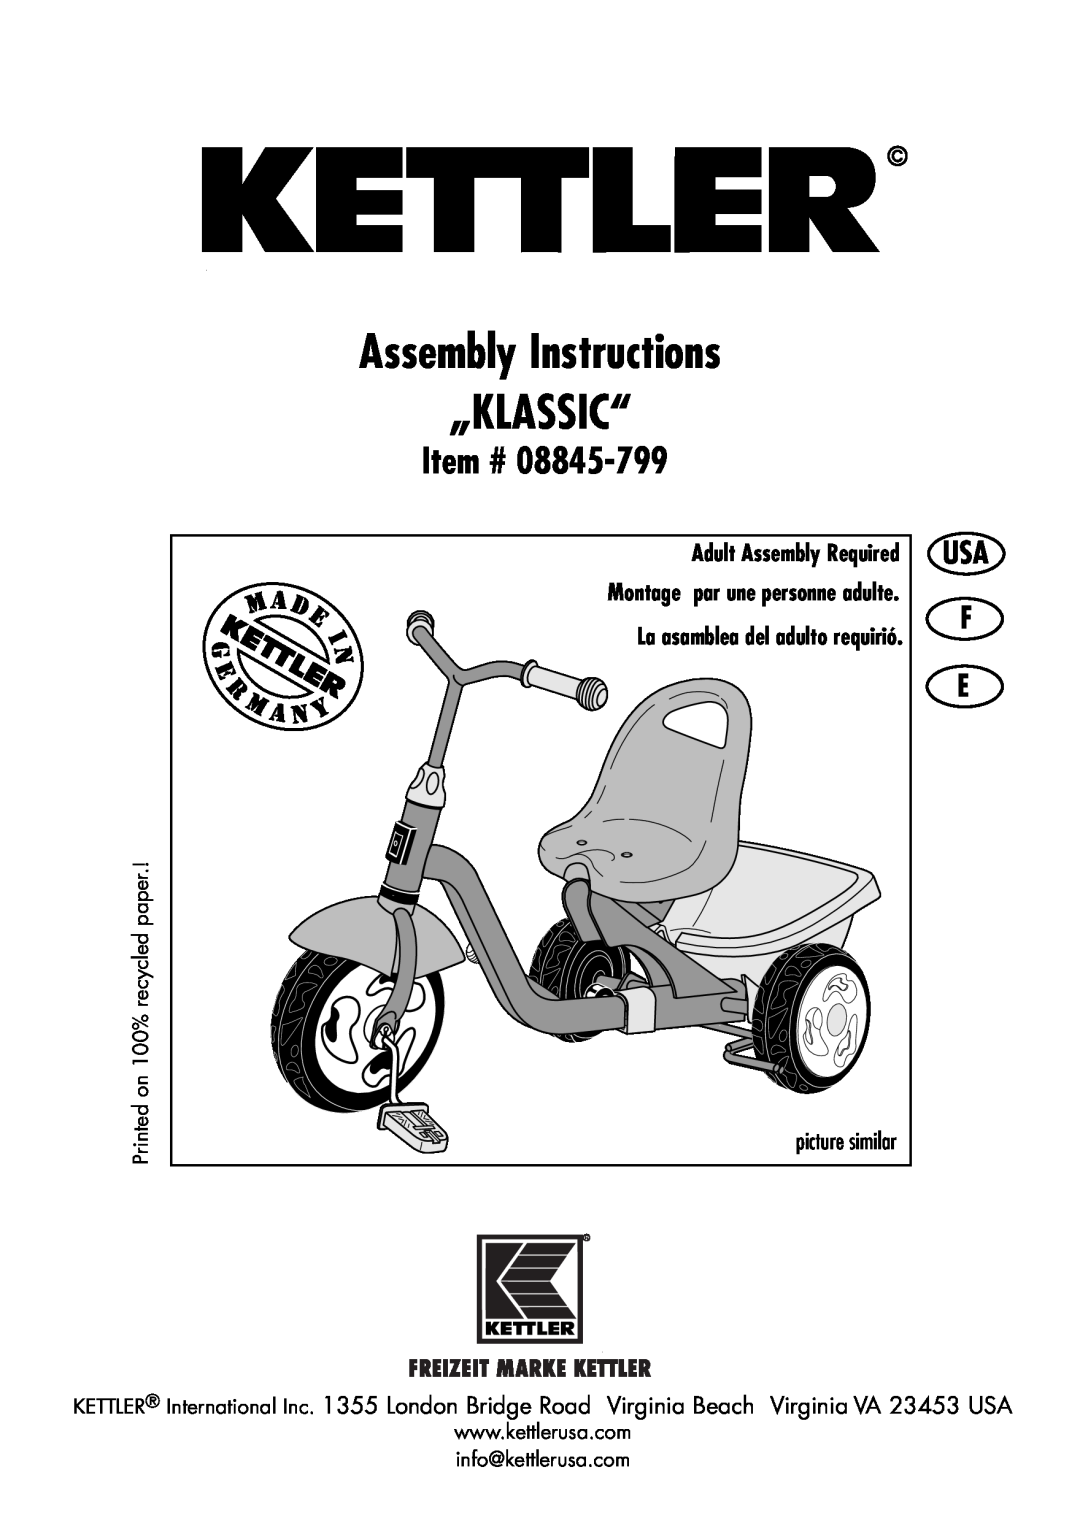 Kettler HP 355 manual Assembly Instructions „KLASSIC“, Adult Assembly Required, Item #, La asamblea del adulto requirió 